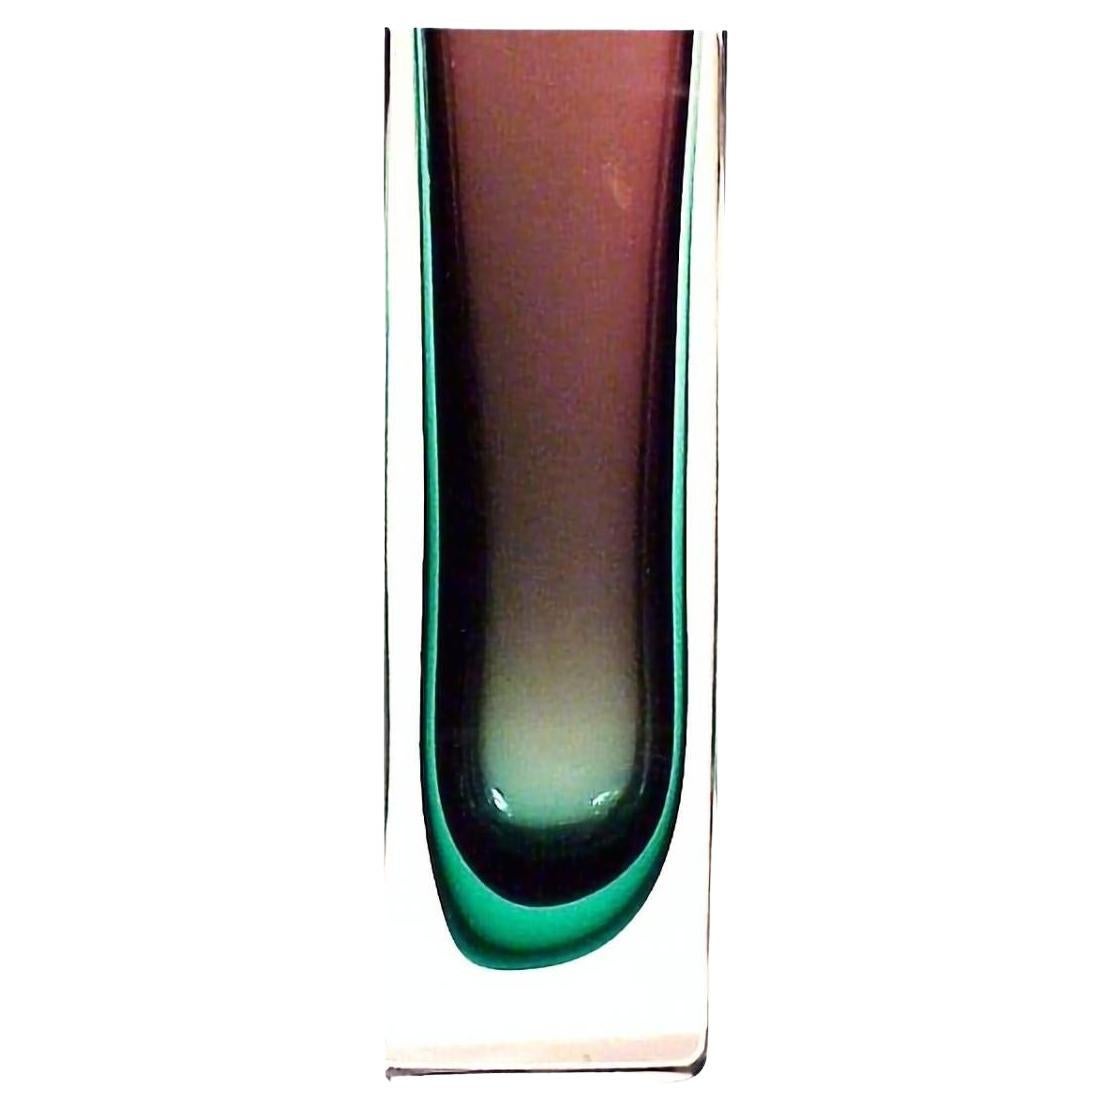 Submerged Vase aus Glas, Flavio Poli Design für Seguso Design, 1960er Jahre